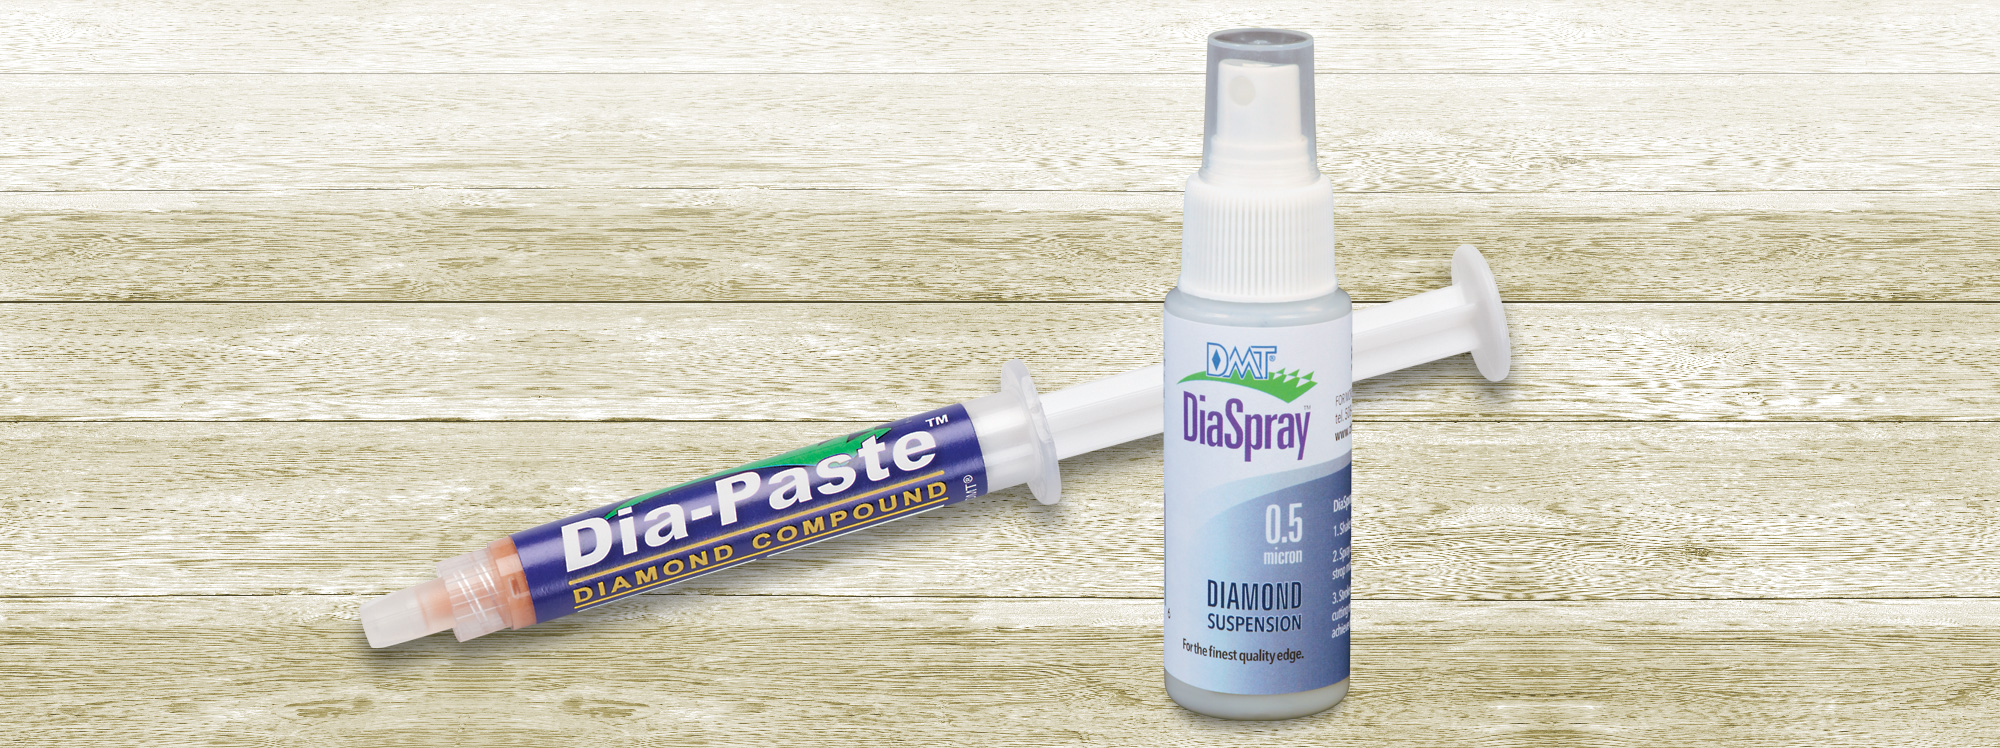 Dia-Paste™ and DiaSpray™